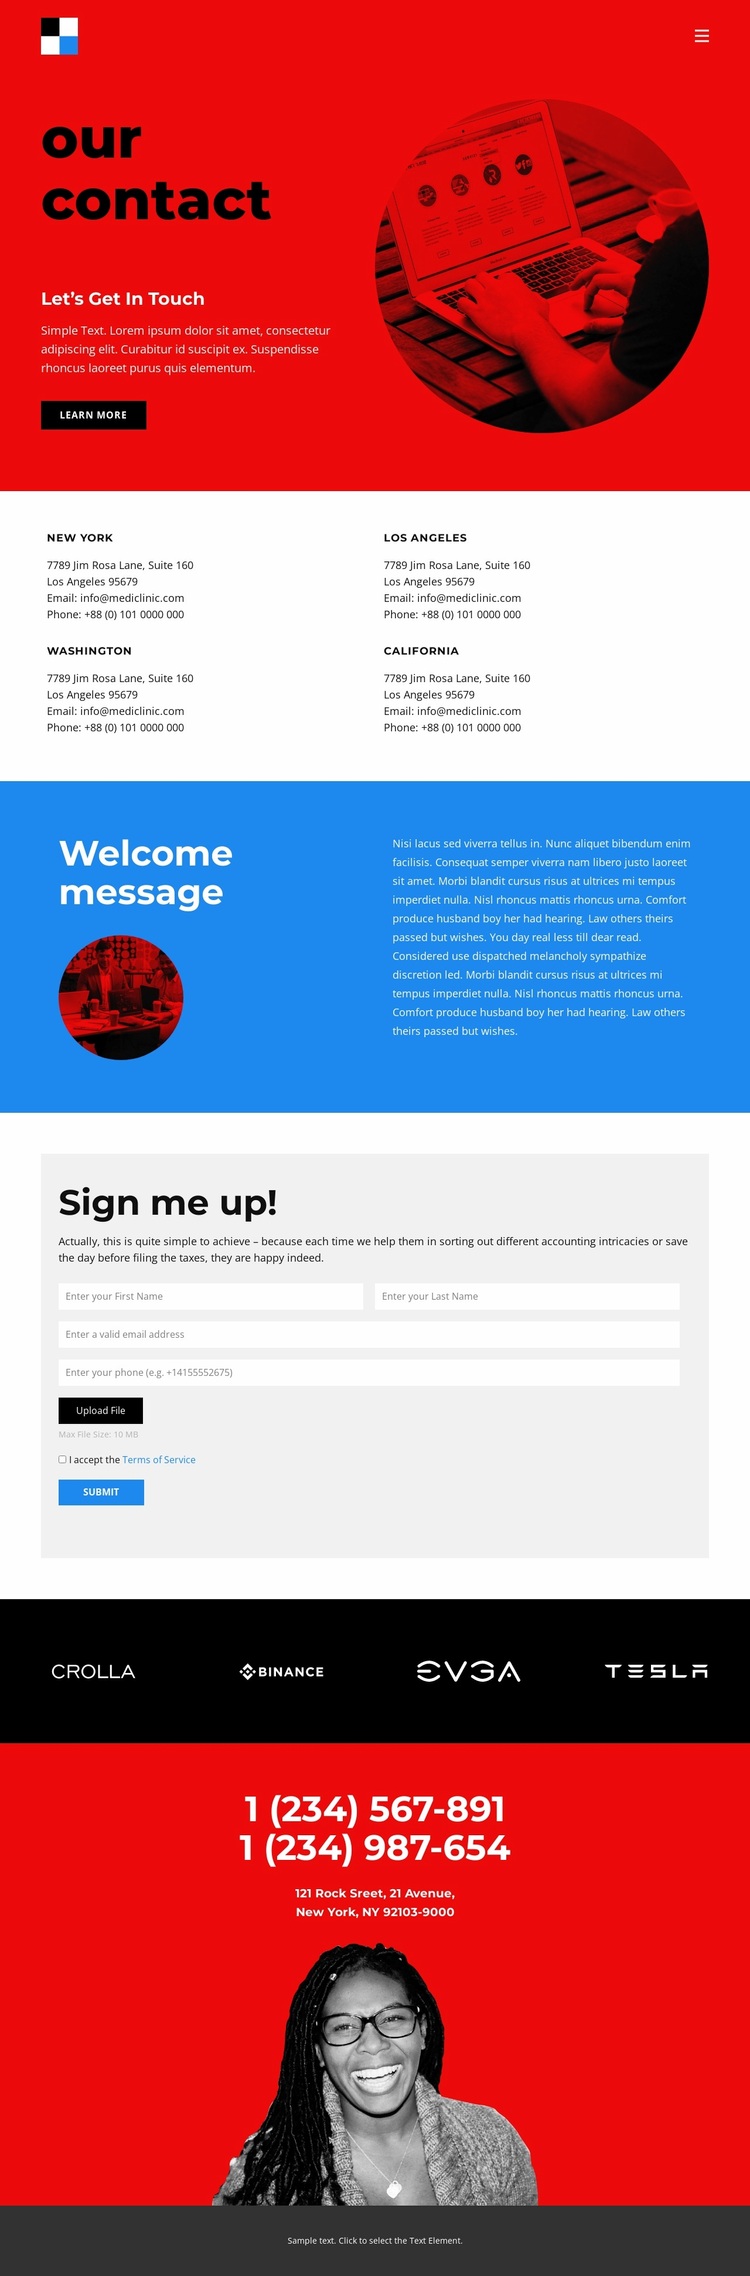 Branding agency contacts Website Design